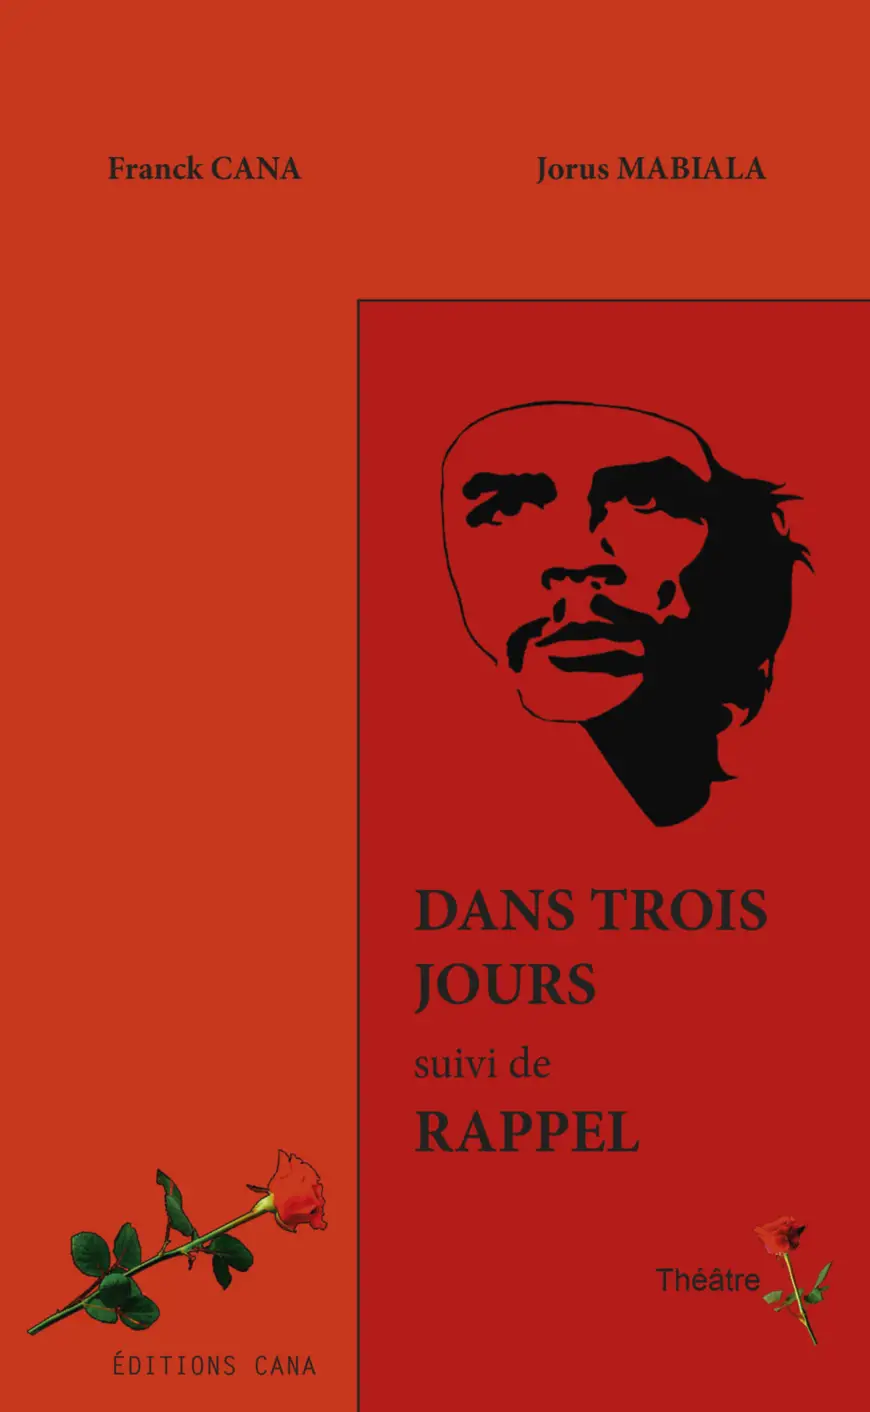 THÉÂTRE : L’ouvrage  « Dans trois jours », de Franck Cana  et Jorus Mabiala, vient de paraître